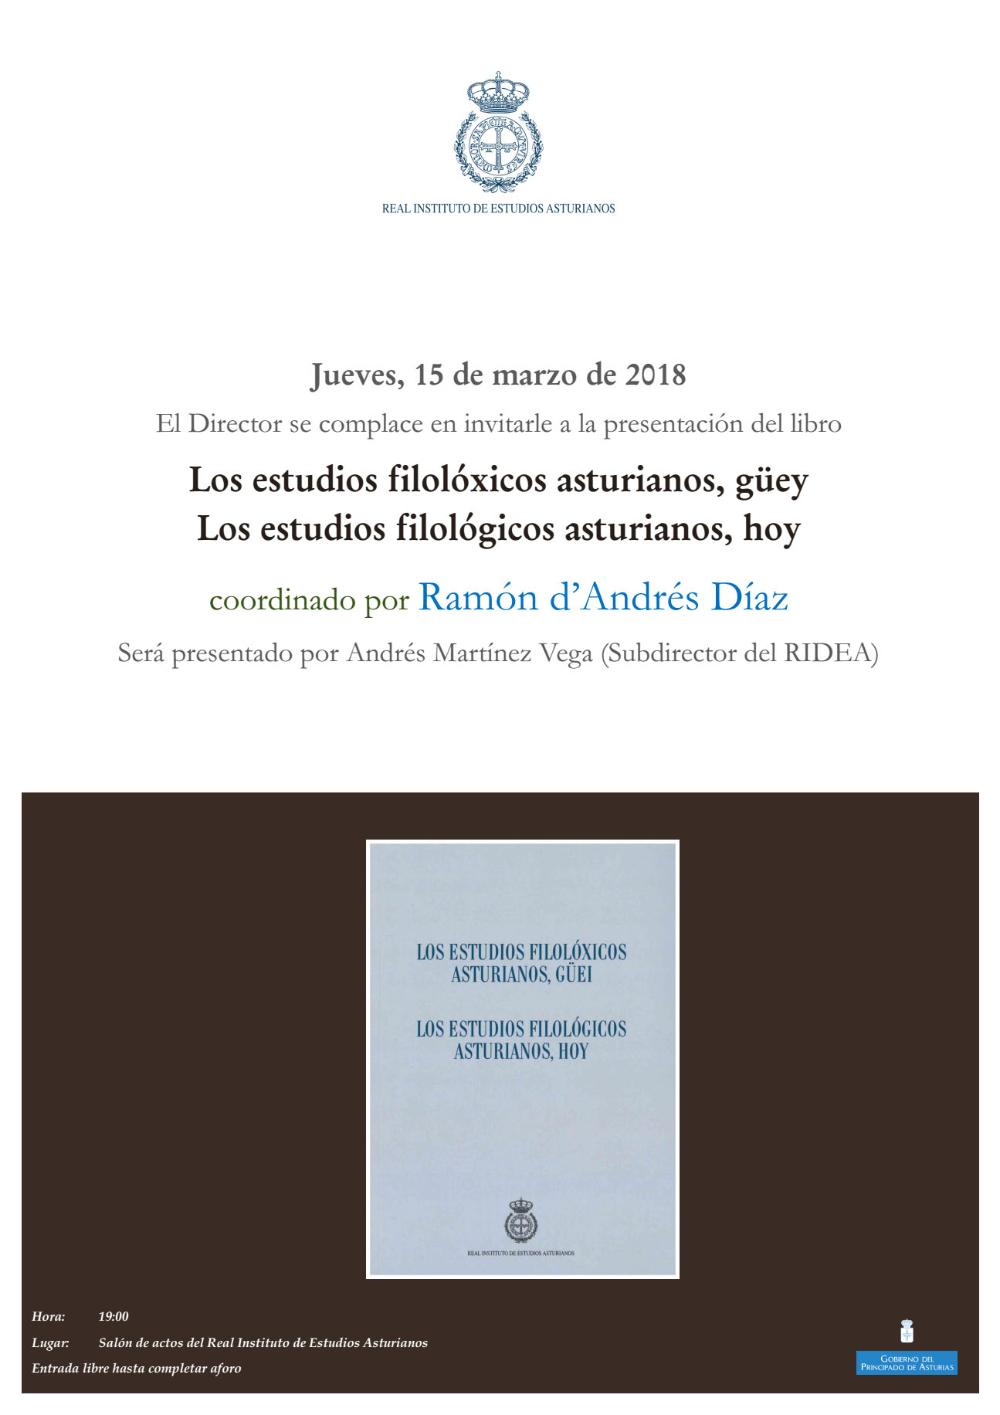 Imagen - Presentación del libro Los estudios filolóxicos asturianos, güey. Los estudios filológicos asturianos, hoy